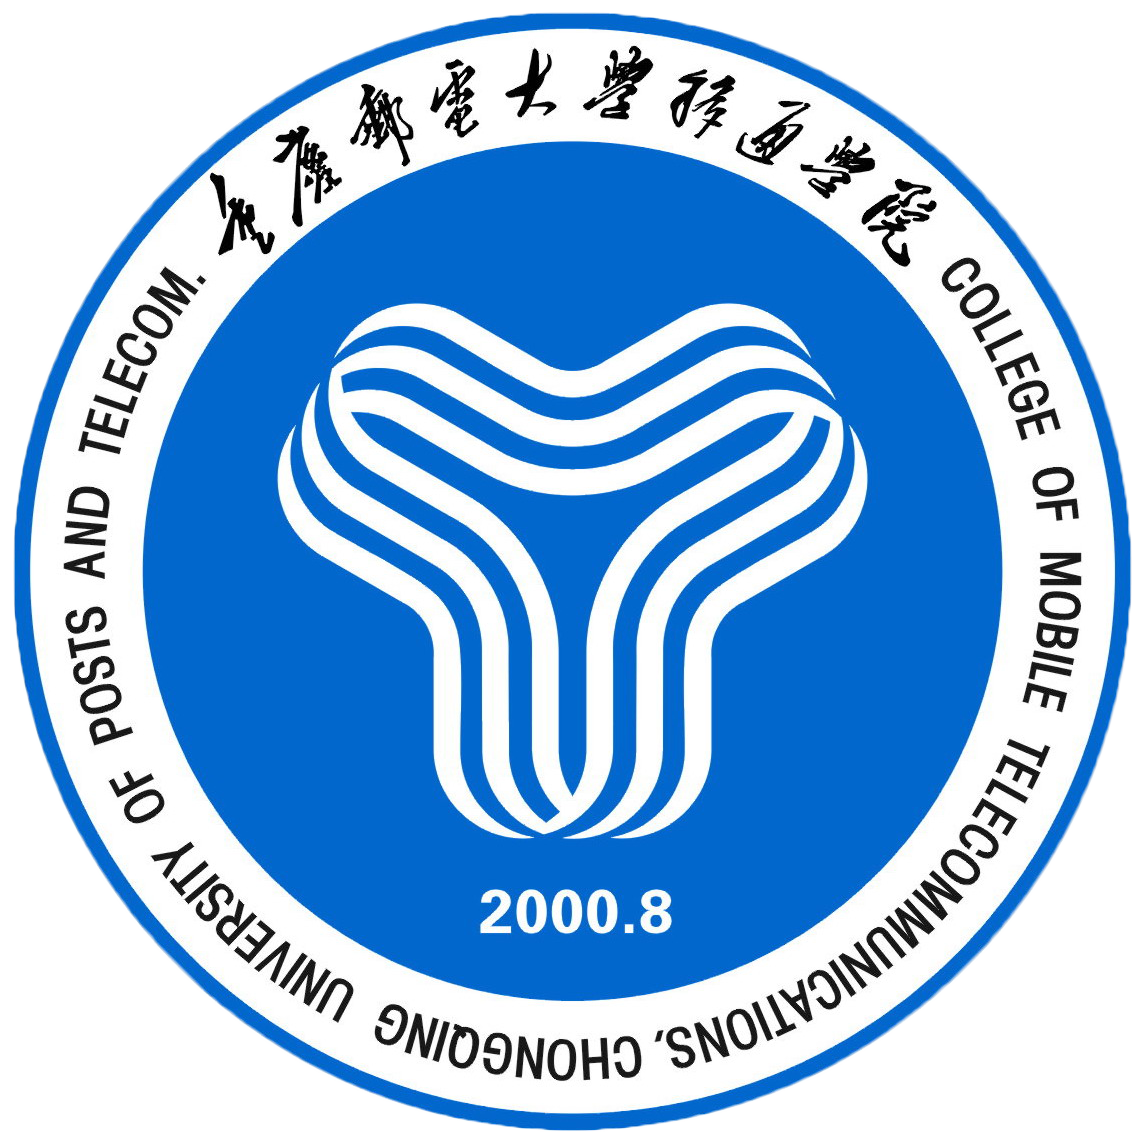 重庆邮电大学移通学院是经教育部批准的全日制民